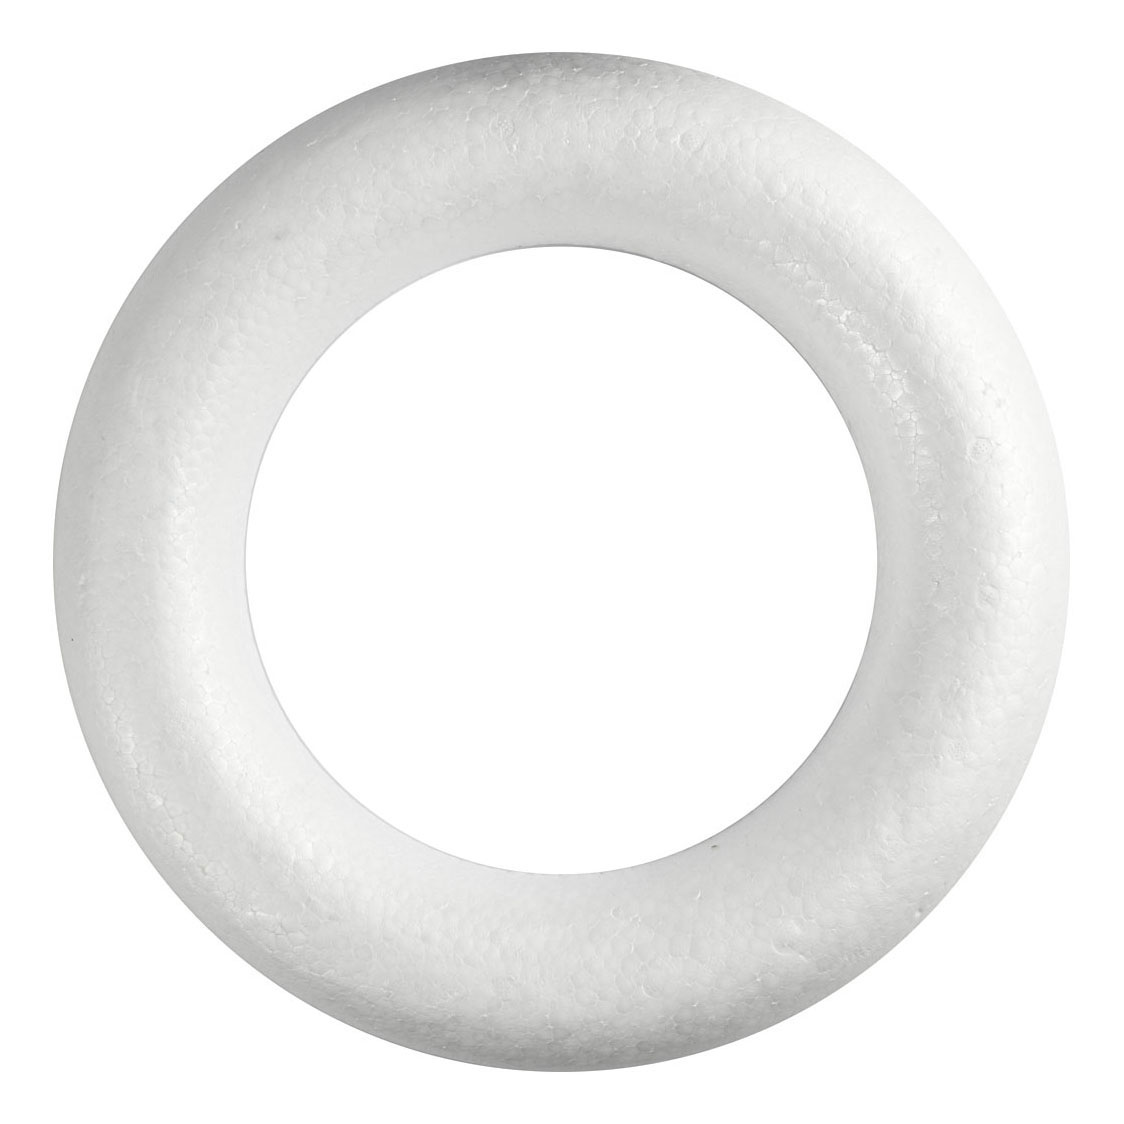 Anneau en polystyrène blanc avec dos plat, 35 cm